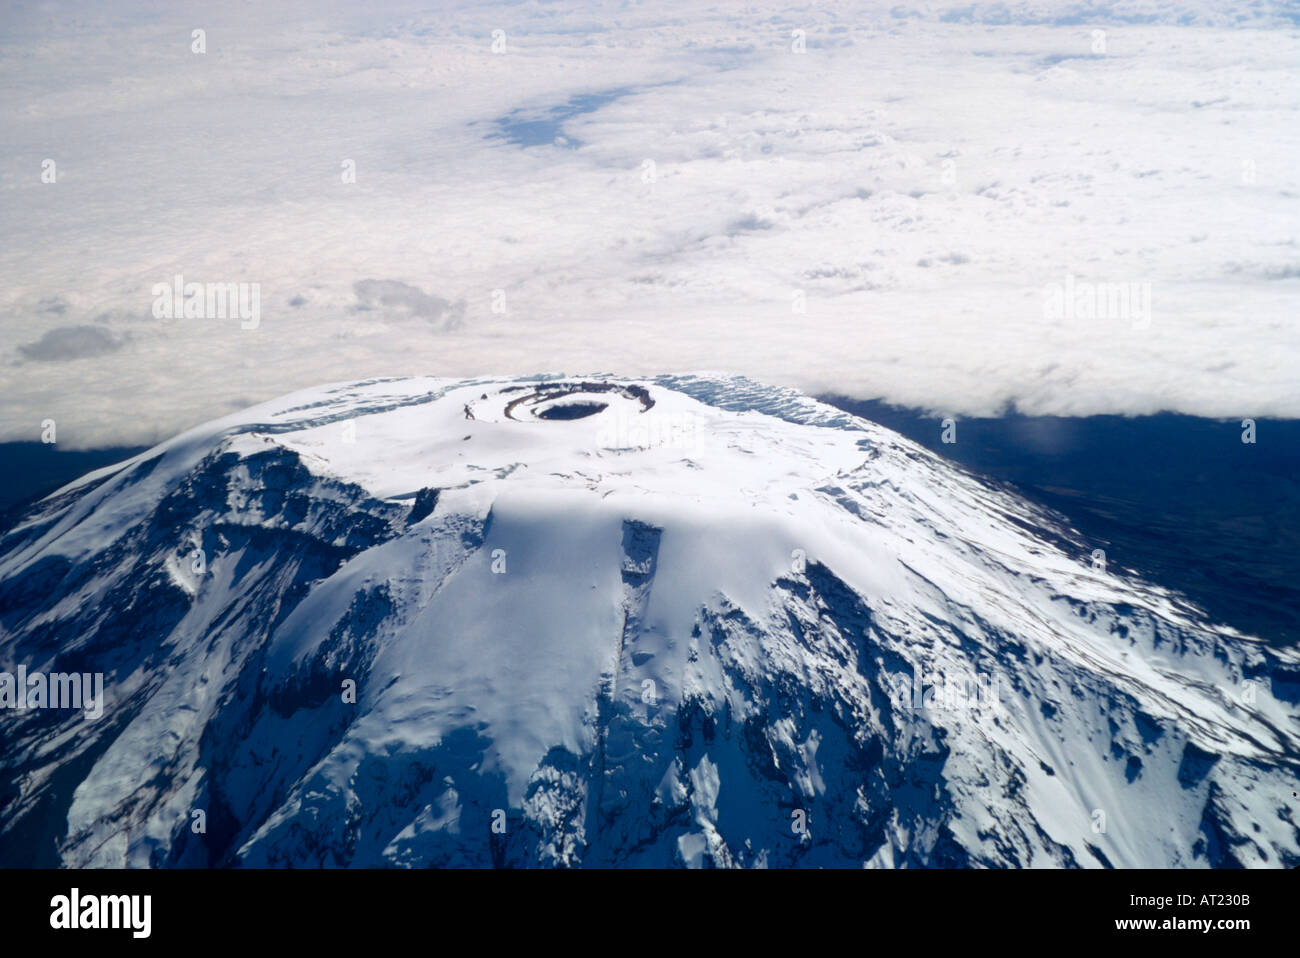 Mount Kilimanjaro from the Air. Photo taken 1974 Stock Photo